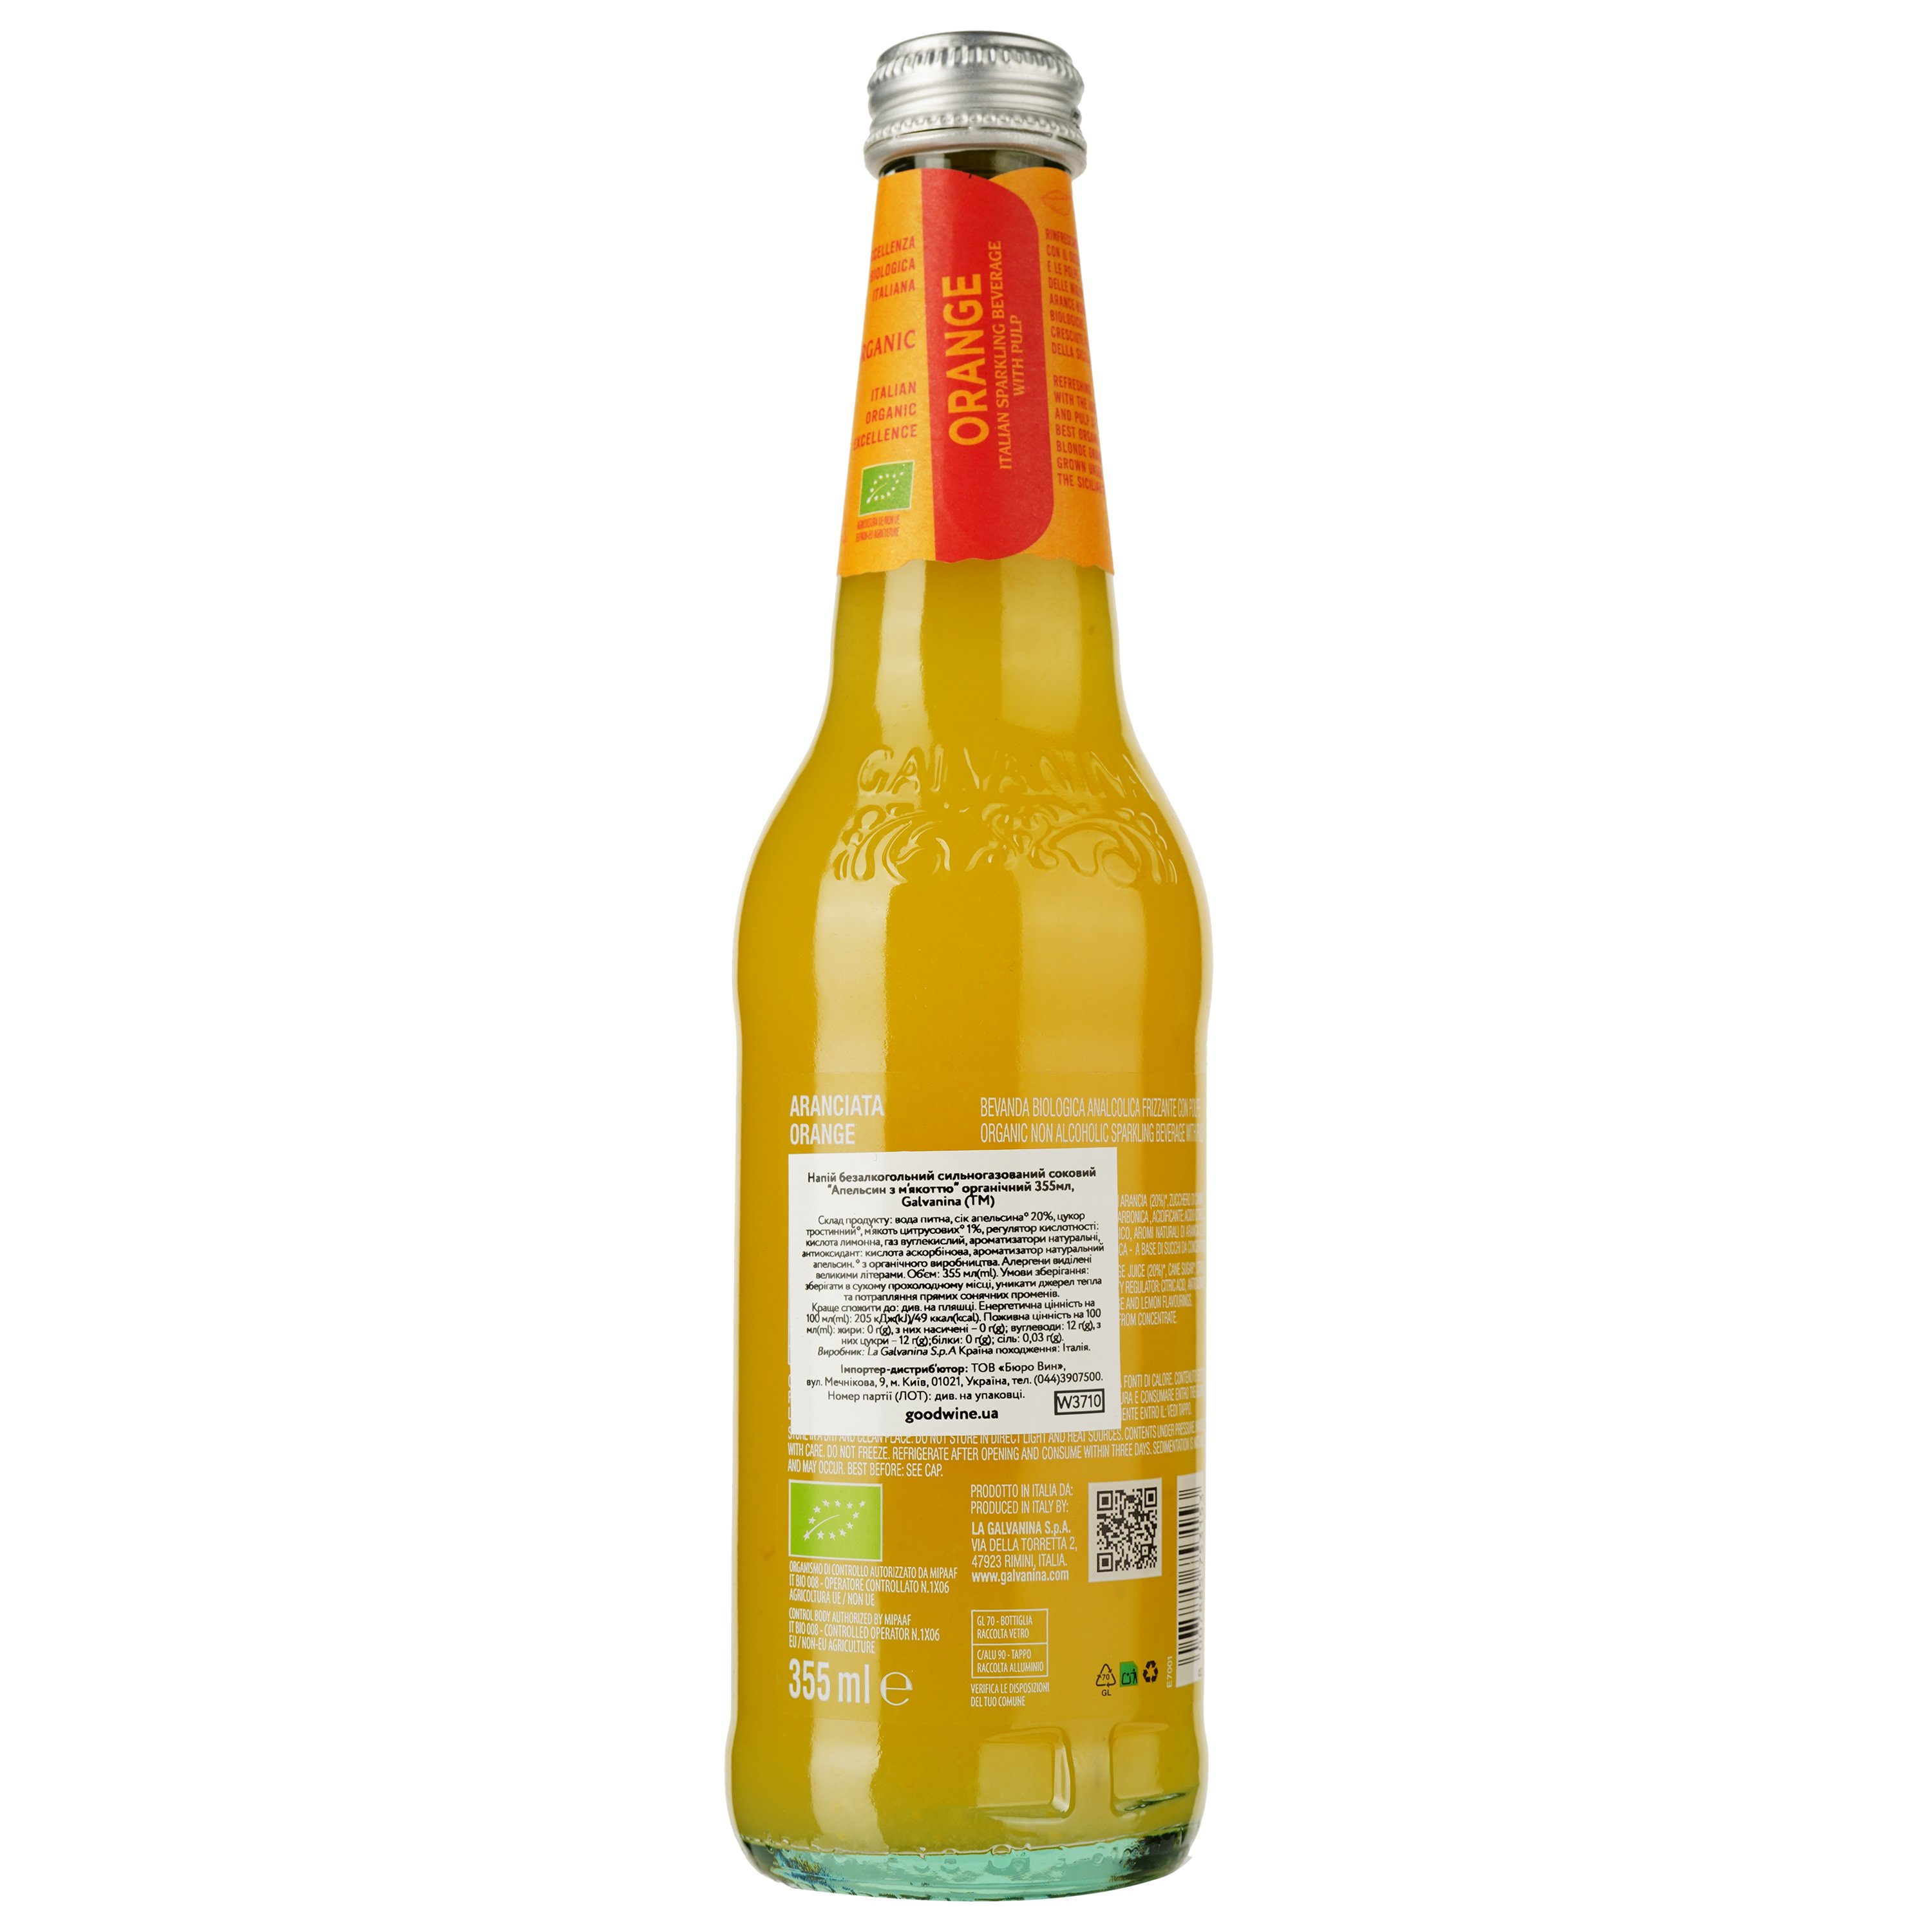 Напиток Galvanina Organic Sparkling Orange безалкогольный 355 мл (W3710) - фото 2